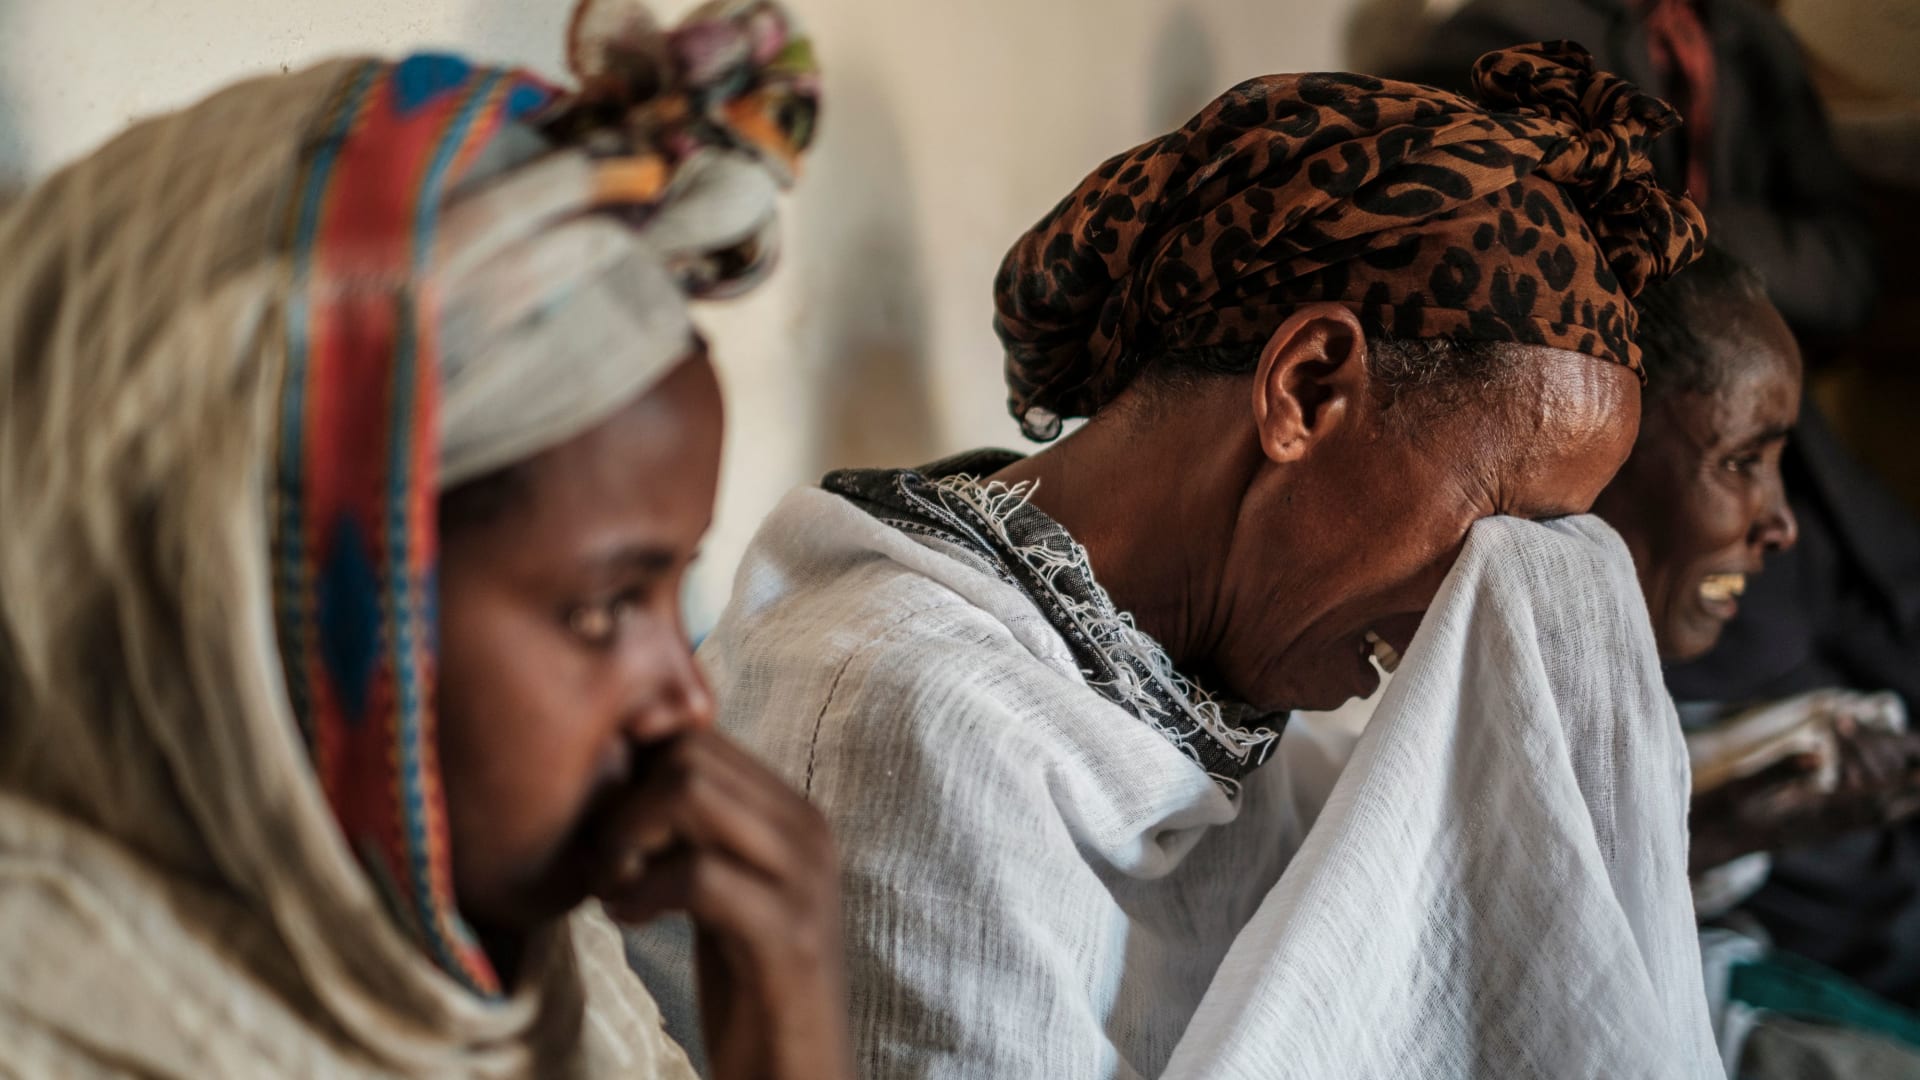 كيف تحوّل احتفال ديني إلى مذبحة دموية في إثيوبيا؟